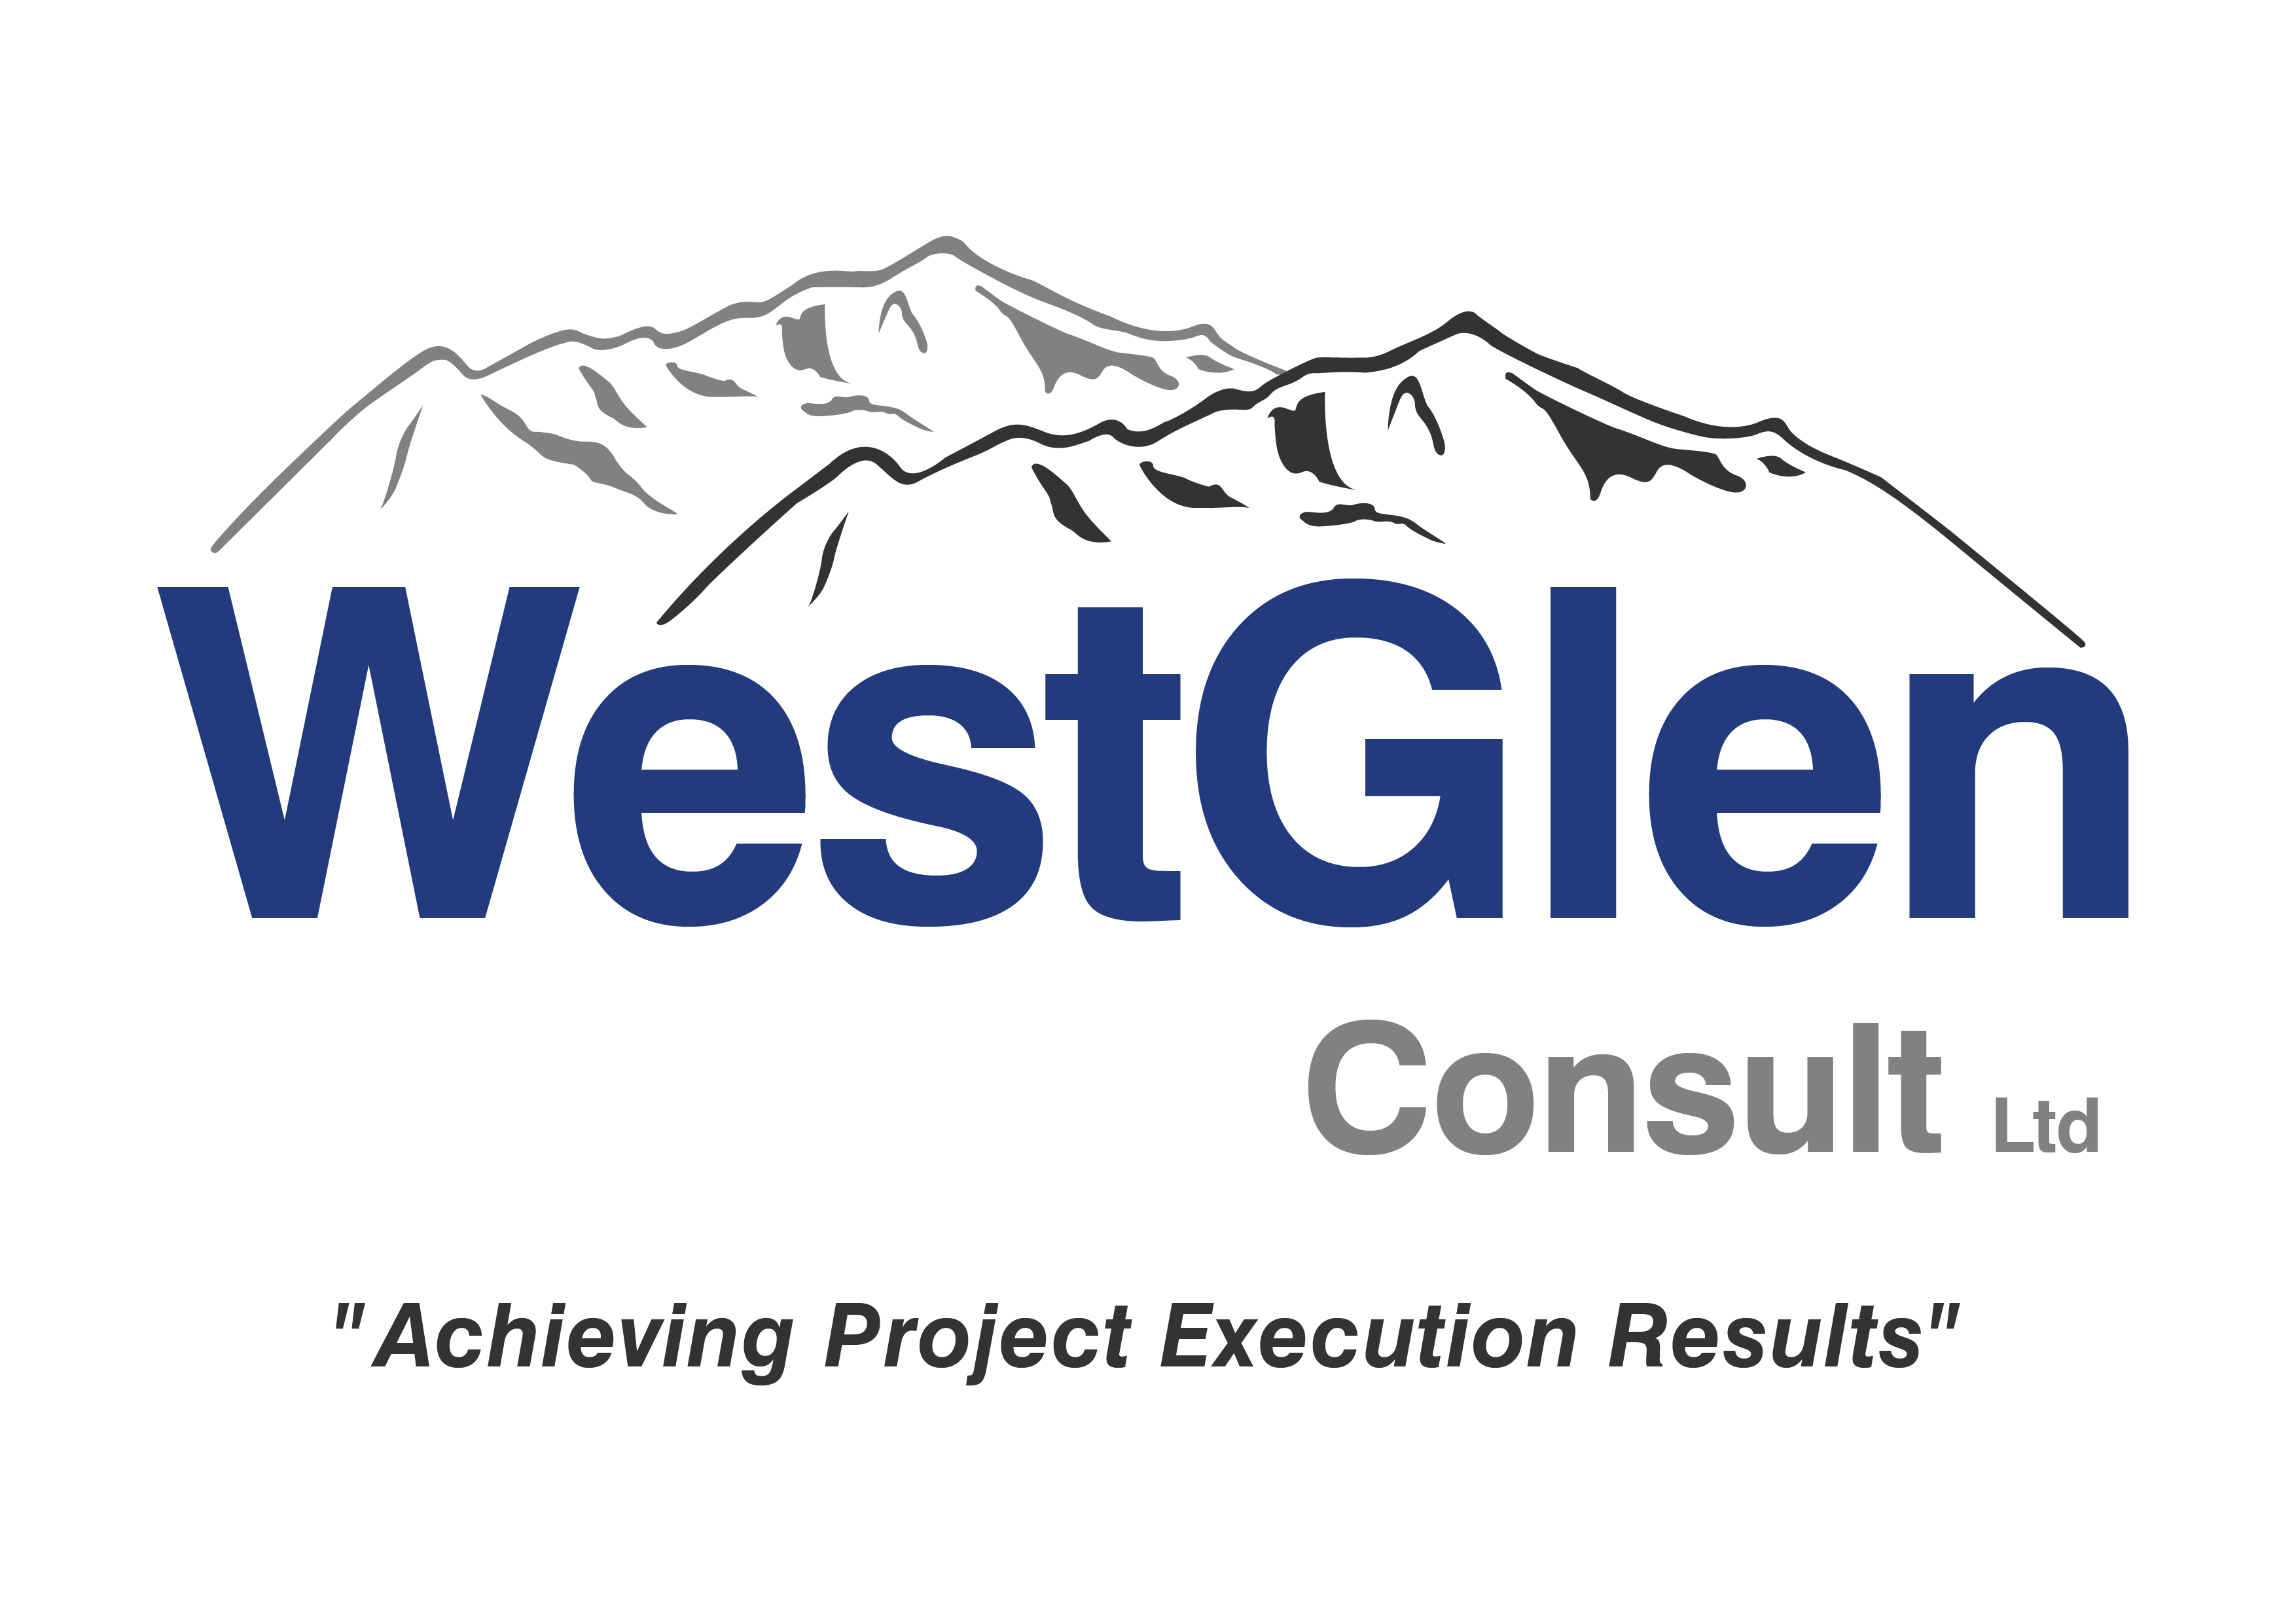 Linked logo for WestGlen Consult Ltd.